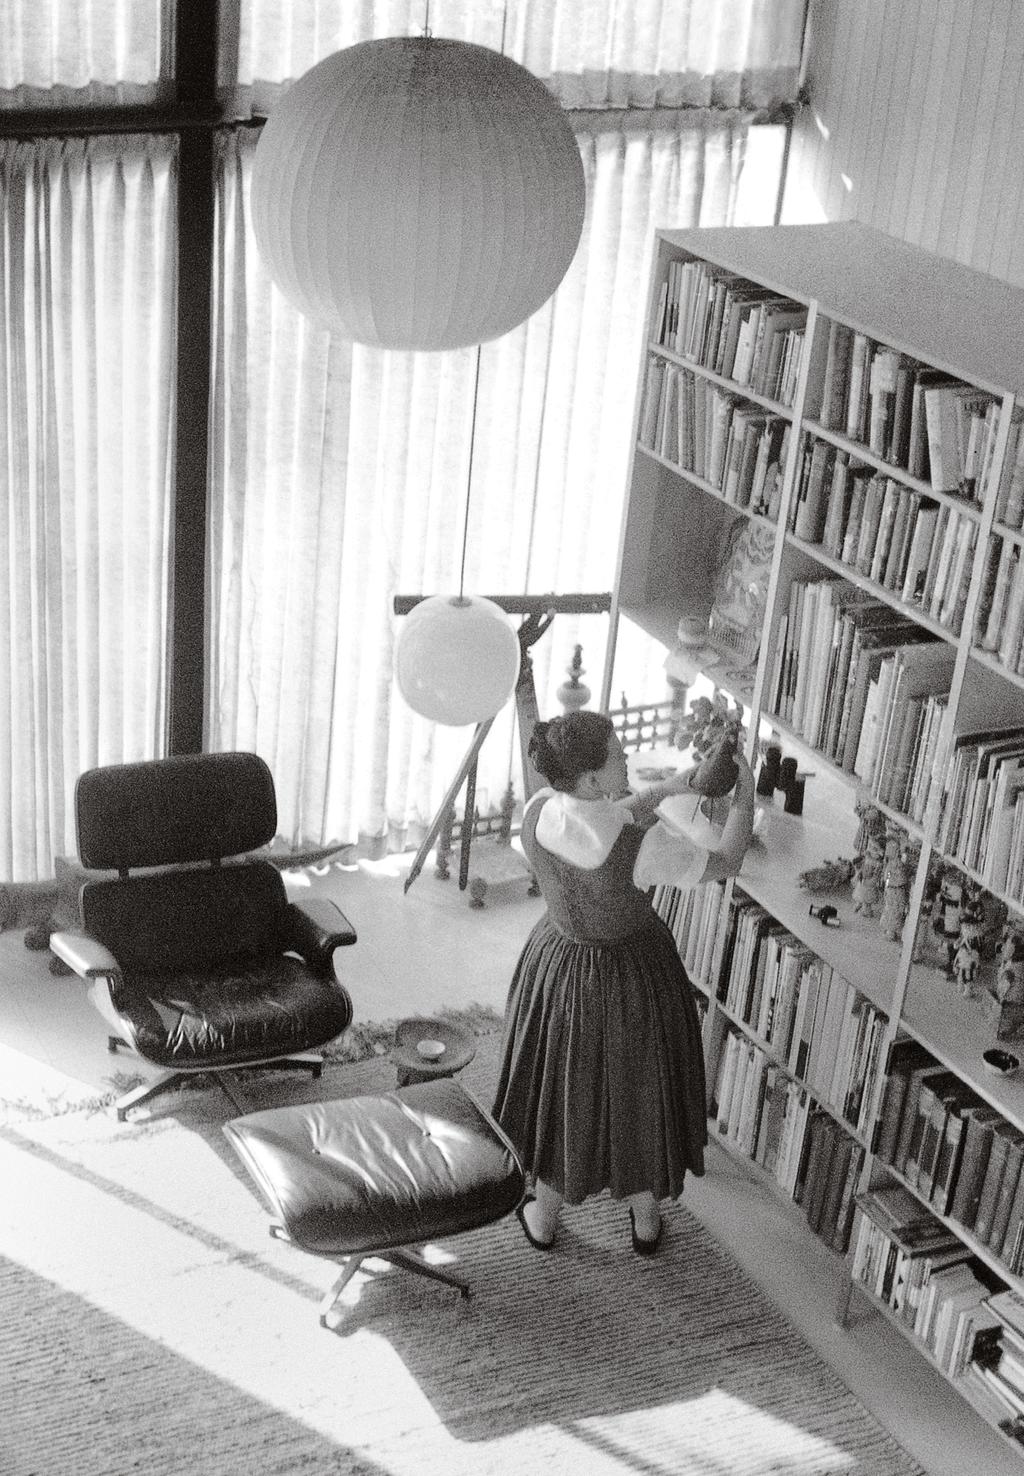 Lounge Chair: viering 60 jaar productie Toen Charles en Ray Eames in 956 de Lounge Chair ontwierpen, wilden ze vooral een zacht en comfortabel zitmeubel creëren.